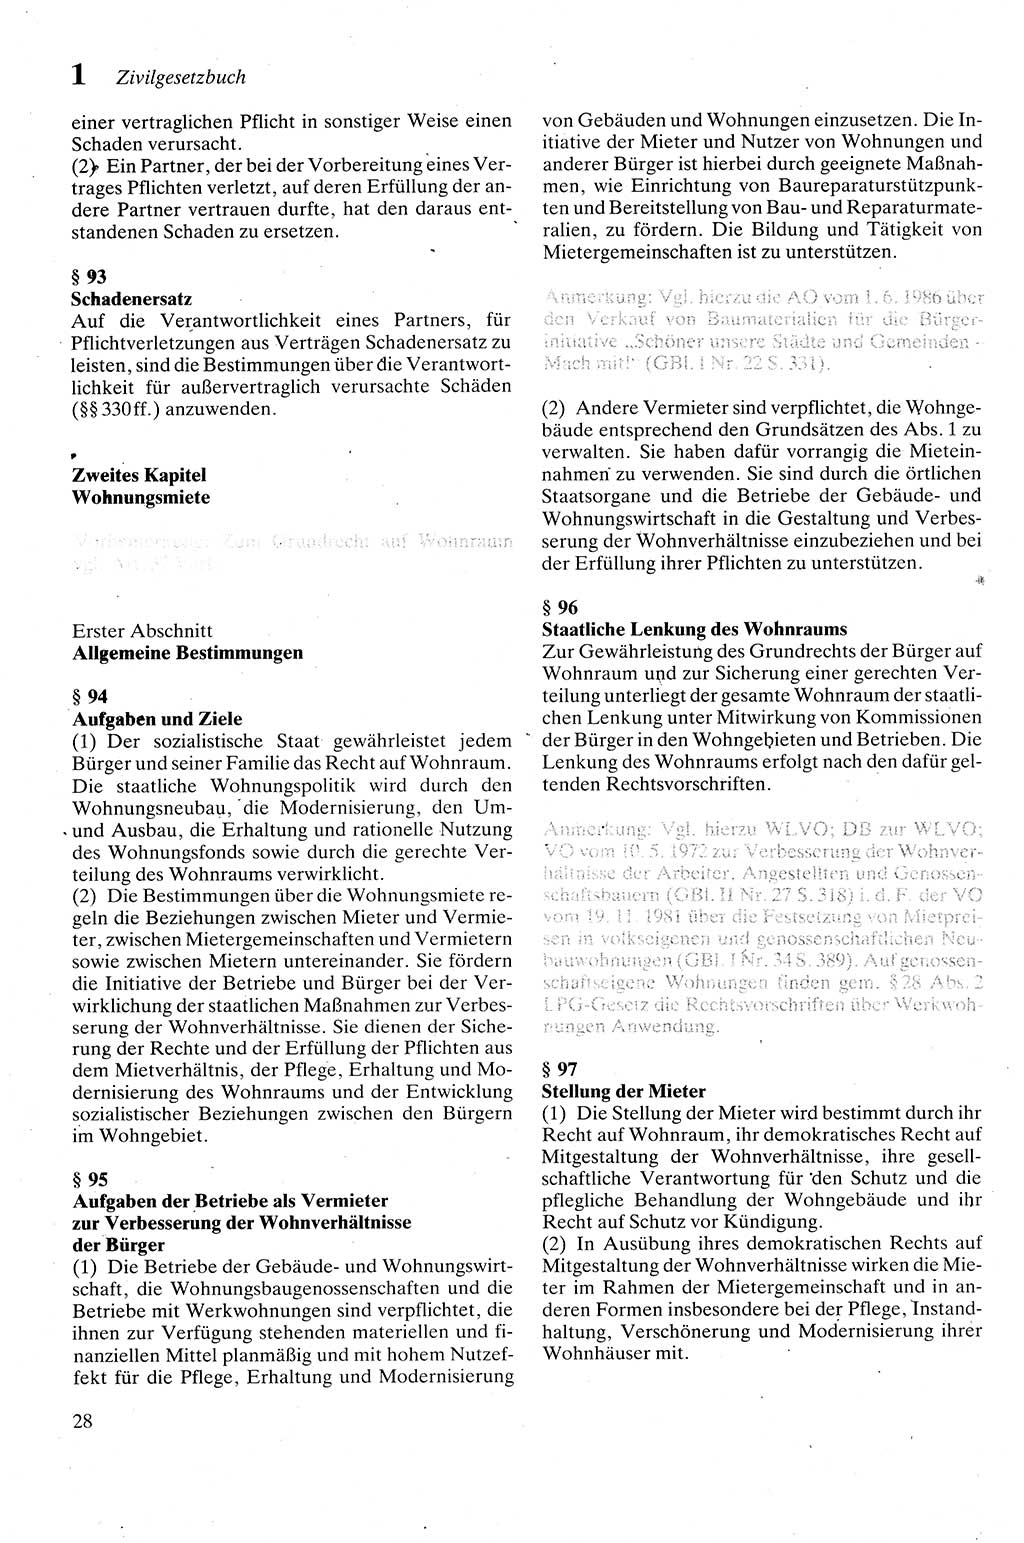 Zivilgesetzbuch (ZVG) sowie angrenzende Gesetze und Bestimmungen [Deutsche Demokratische Republik (DDR)] 1975, Seite 28 (ZGB Ges. Best. DDR 1975, S. 28)